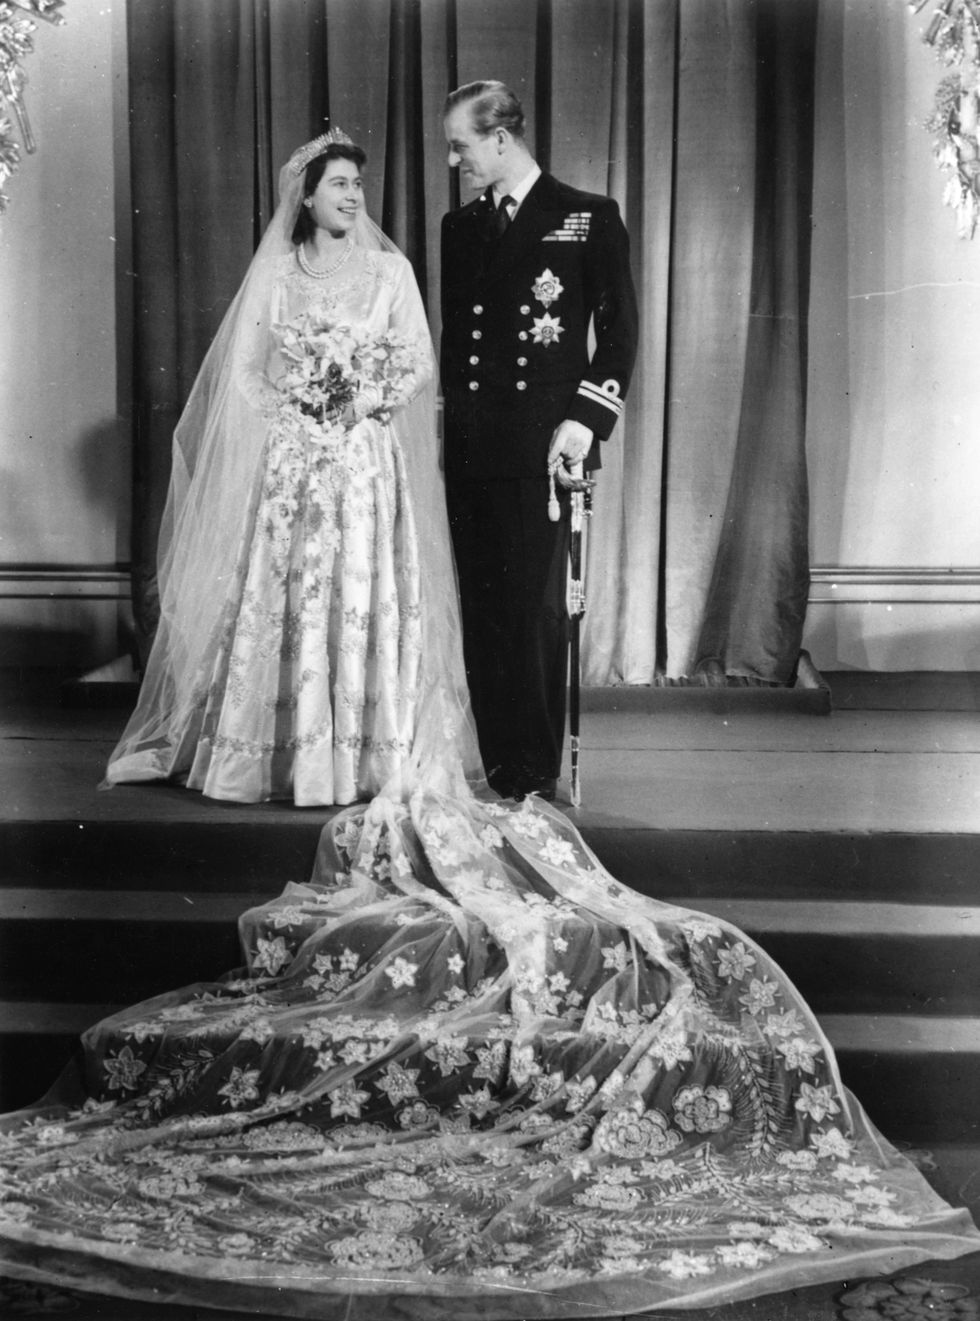 Queen Elizabeth Wedding Dress - The Queen's Dress Photos, Details